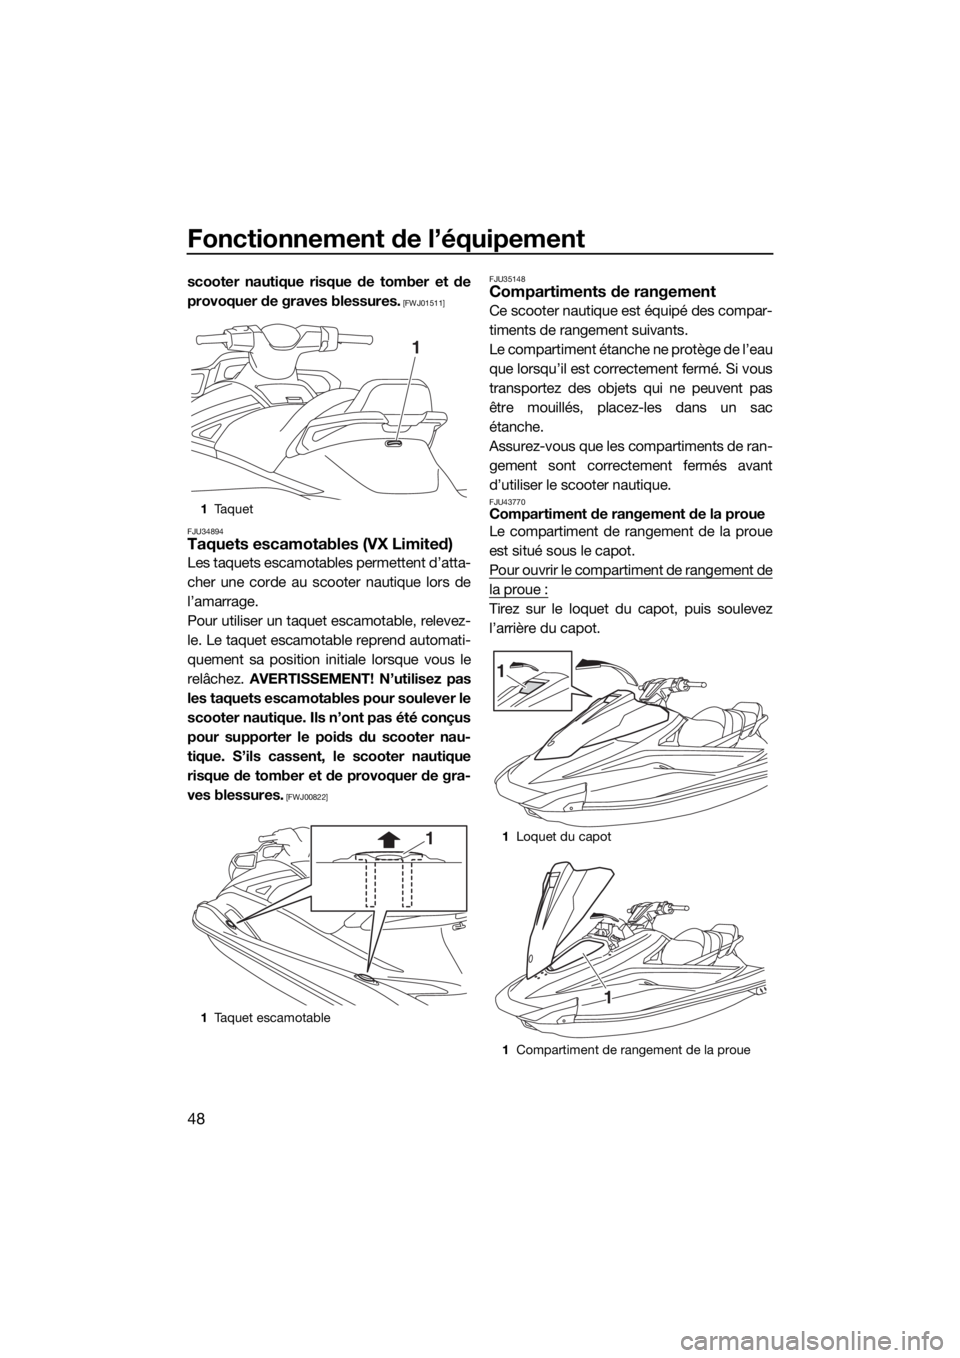 YAMAHA VX 2018  Notices Demploi (in French) Fonctionnement de l’équipement
48
scooter nautique risque de tomber et de
provoquer de graves blessures.
 [FWJ01511]
FJU34894
Taquets escamotables (VX Limited)
Les taquets escamotables permettent d